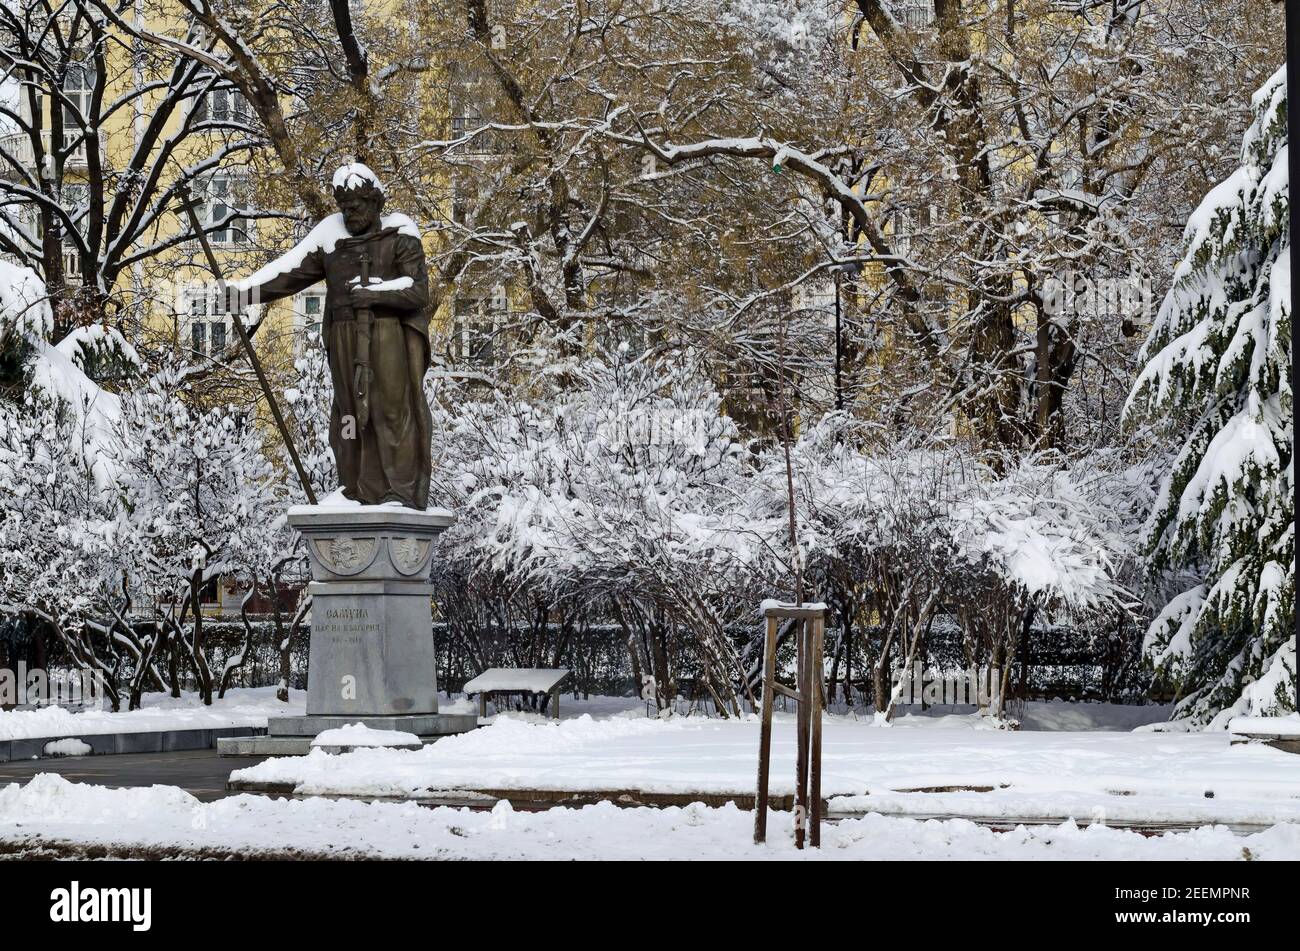 Scena invernale con alberi e scultura di zar Samuel nel parco, coperto di neve, Sofia, Bulgaria Foto Stock